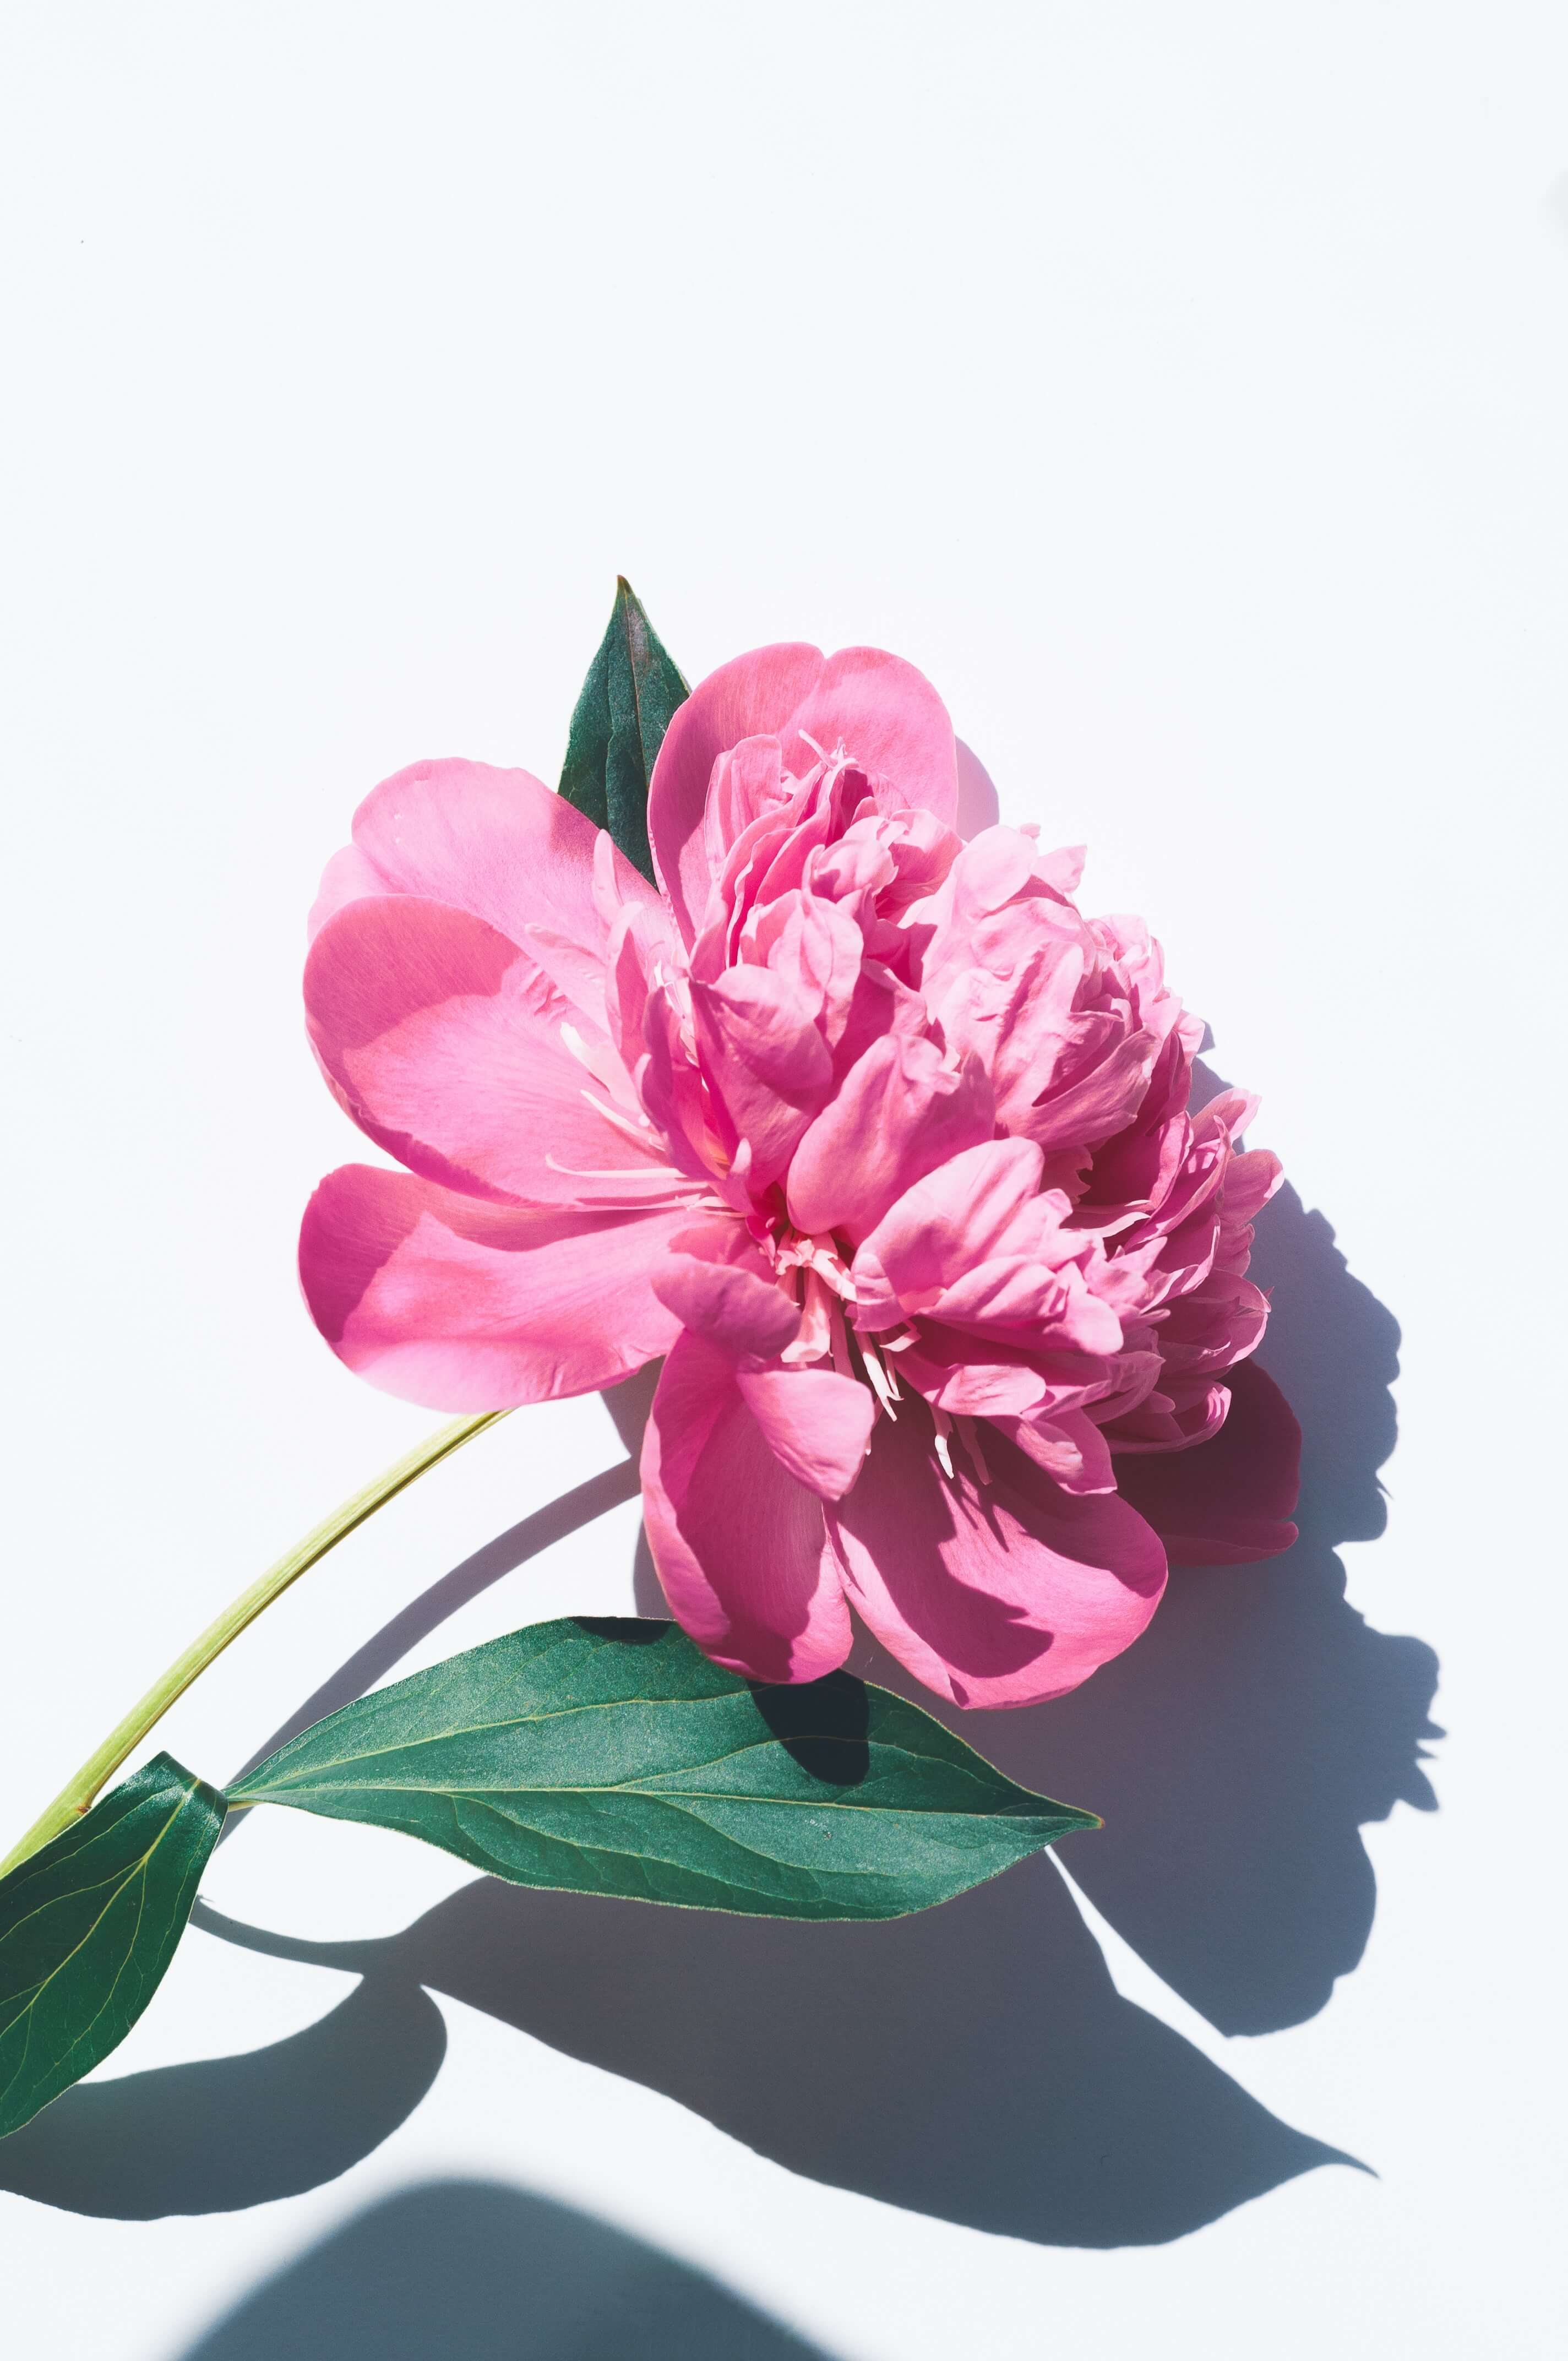 a pink flower portrait iamge